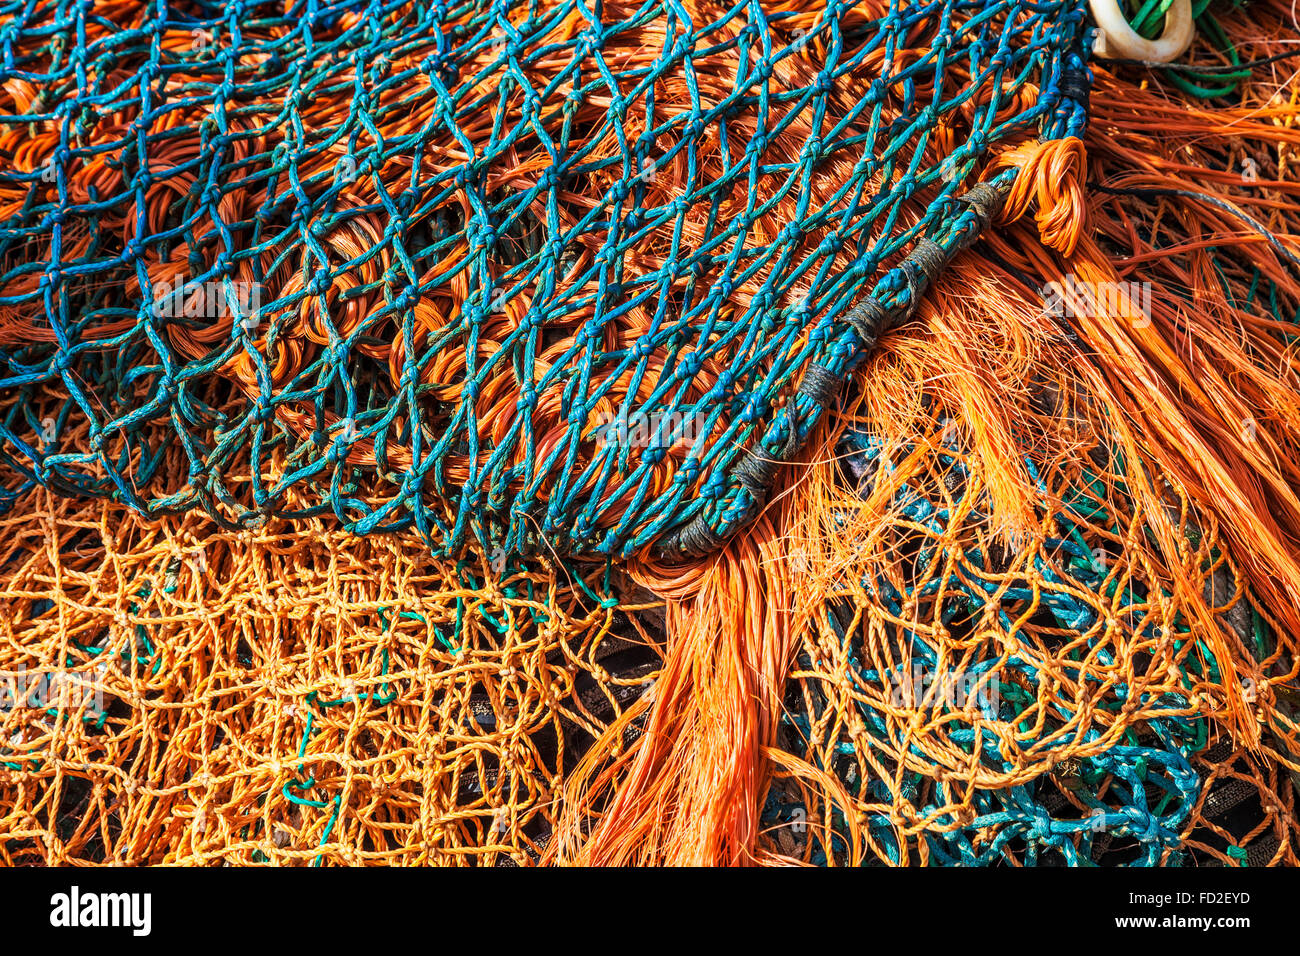 Una imagen abstracta de azul y naranja y redes de pesca. Foto de stock